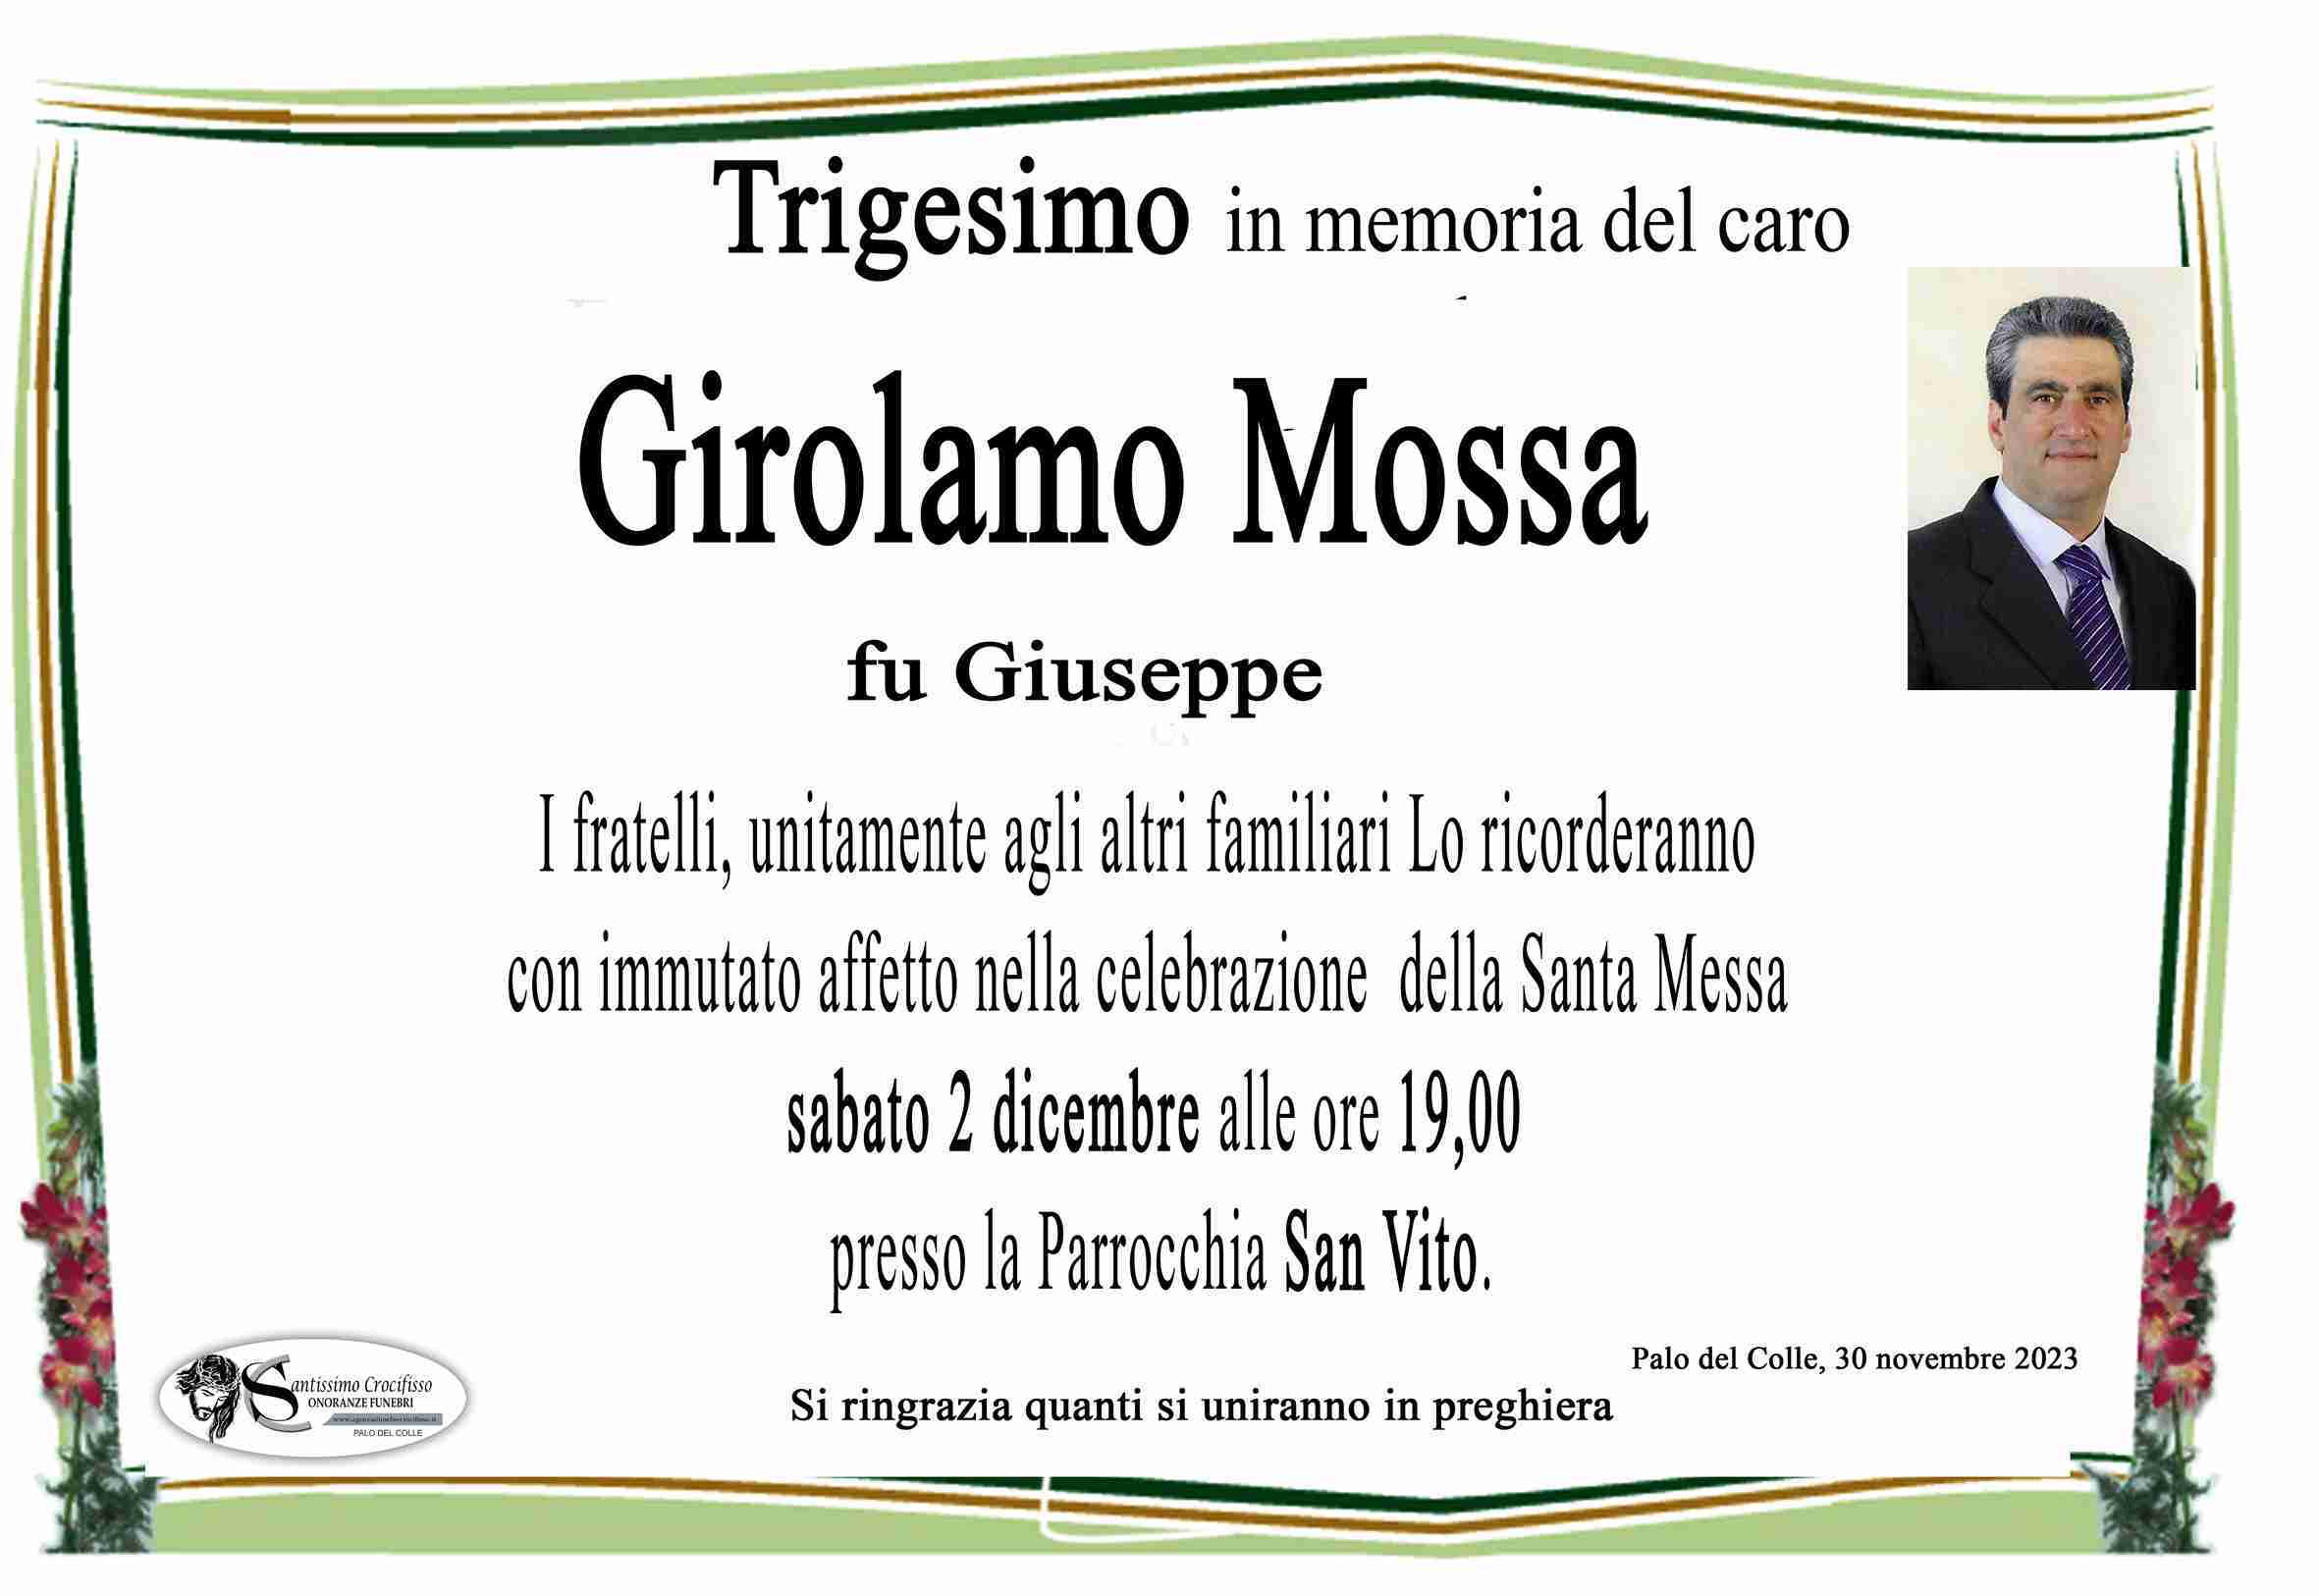 Girolamo Mossa